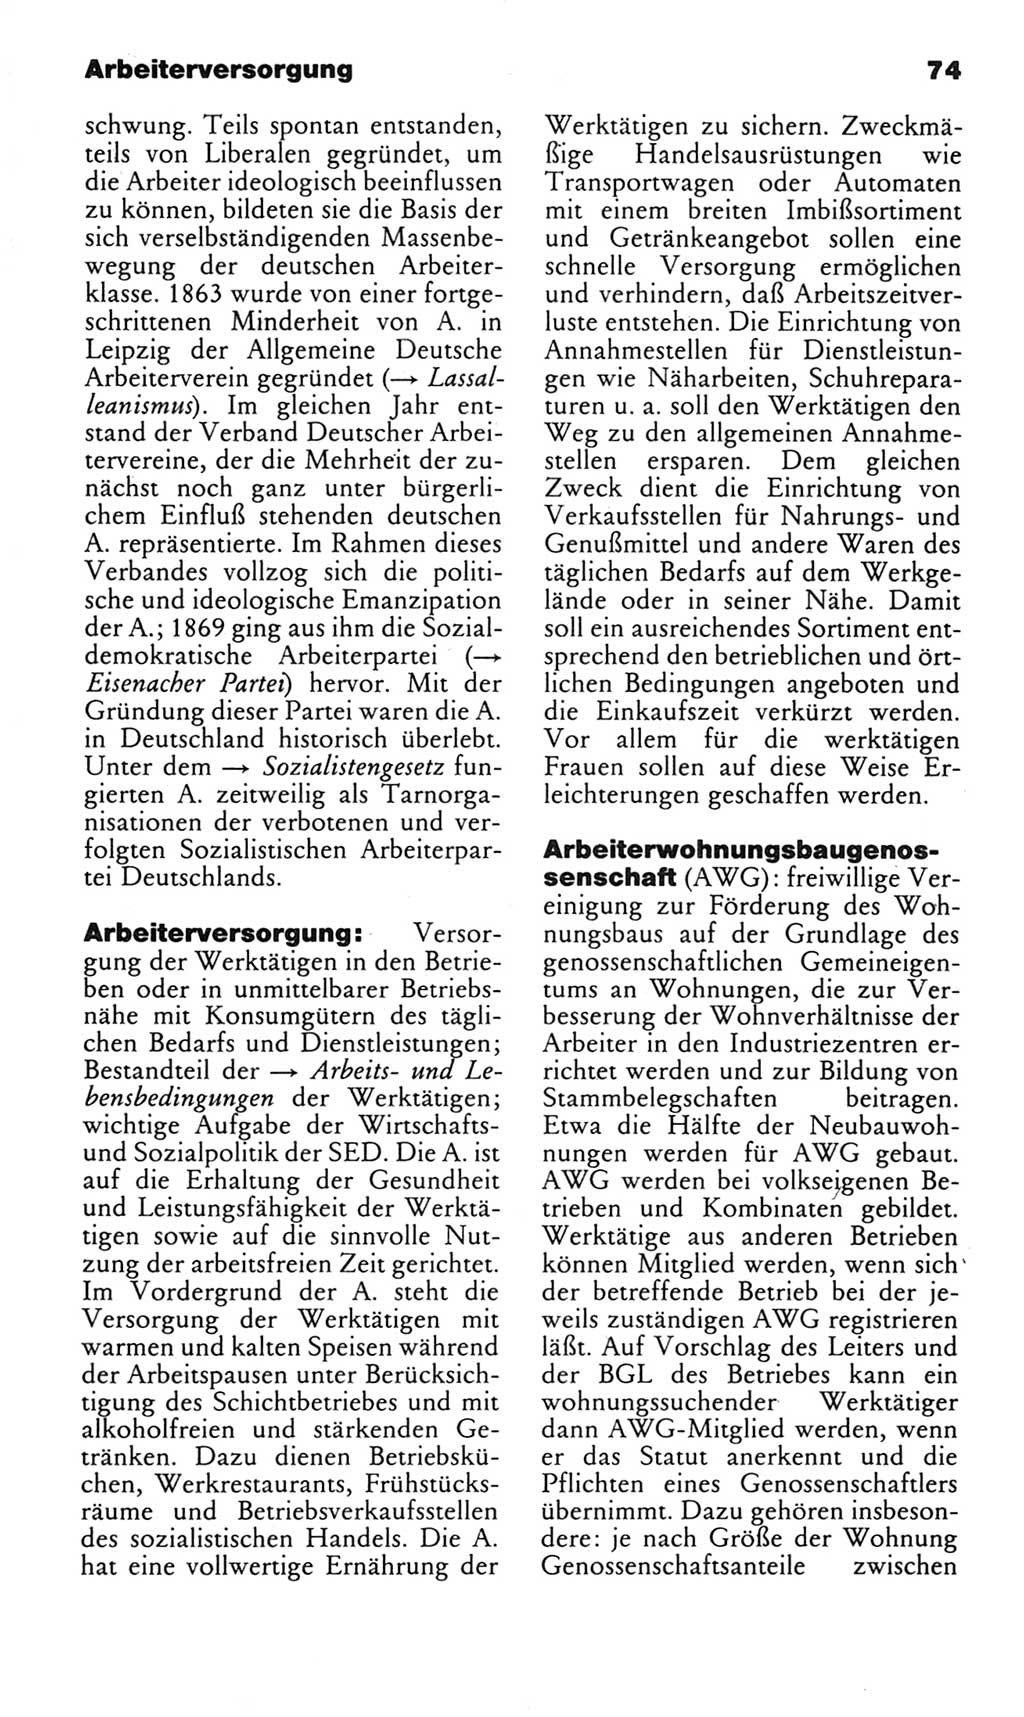 Kleines politisches Wörterbuch [Deutsche Demokratische Republik (DDR)] 1983, Seite 74 (Kl. pol. Wb. DDR 1983, S. 74)